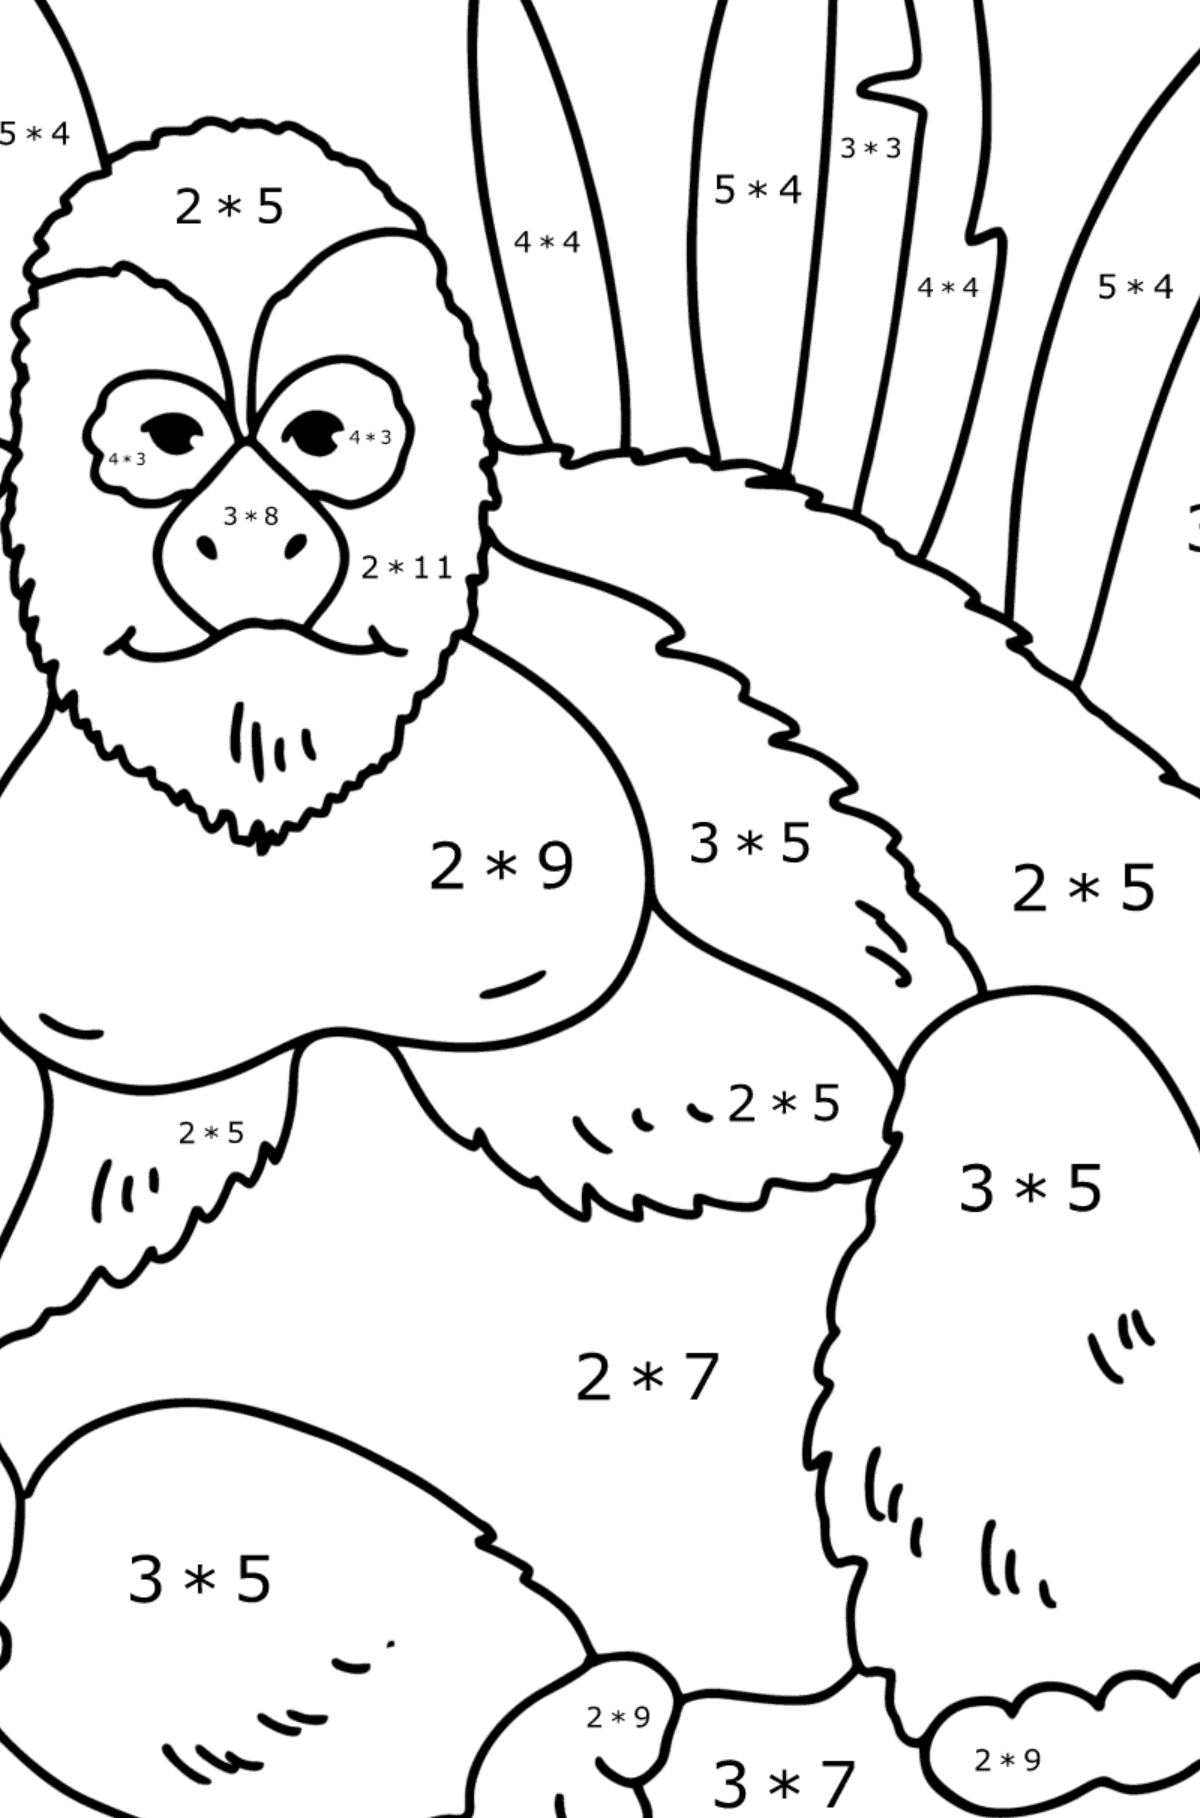 Gorilla kleurplaat - Wiskunde kleurplaten - vermenigvuldiging voor kinderen